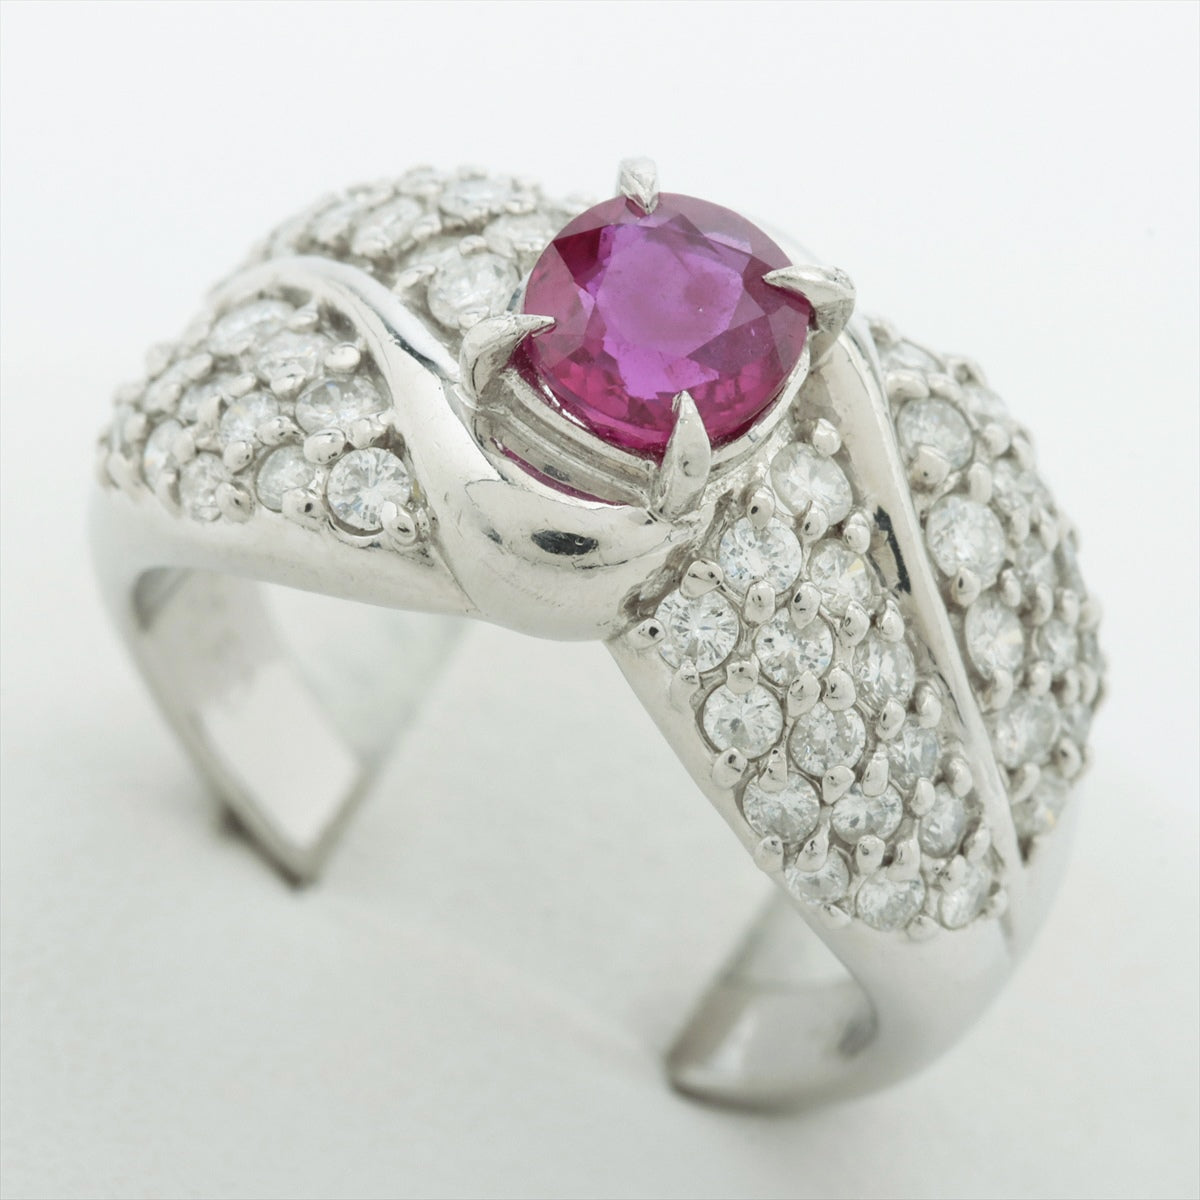 Pink sapphire diamond ring Pt900 8.2g 0.80 D0.80 D0.80